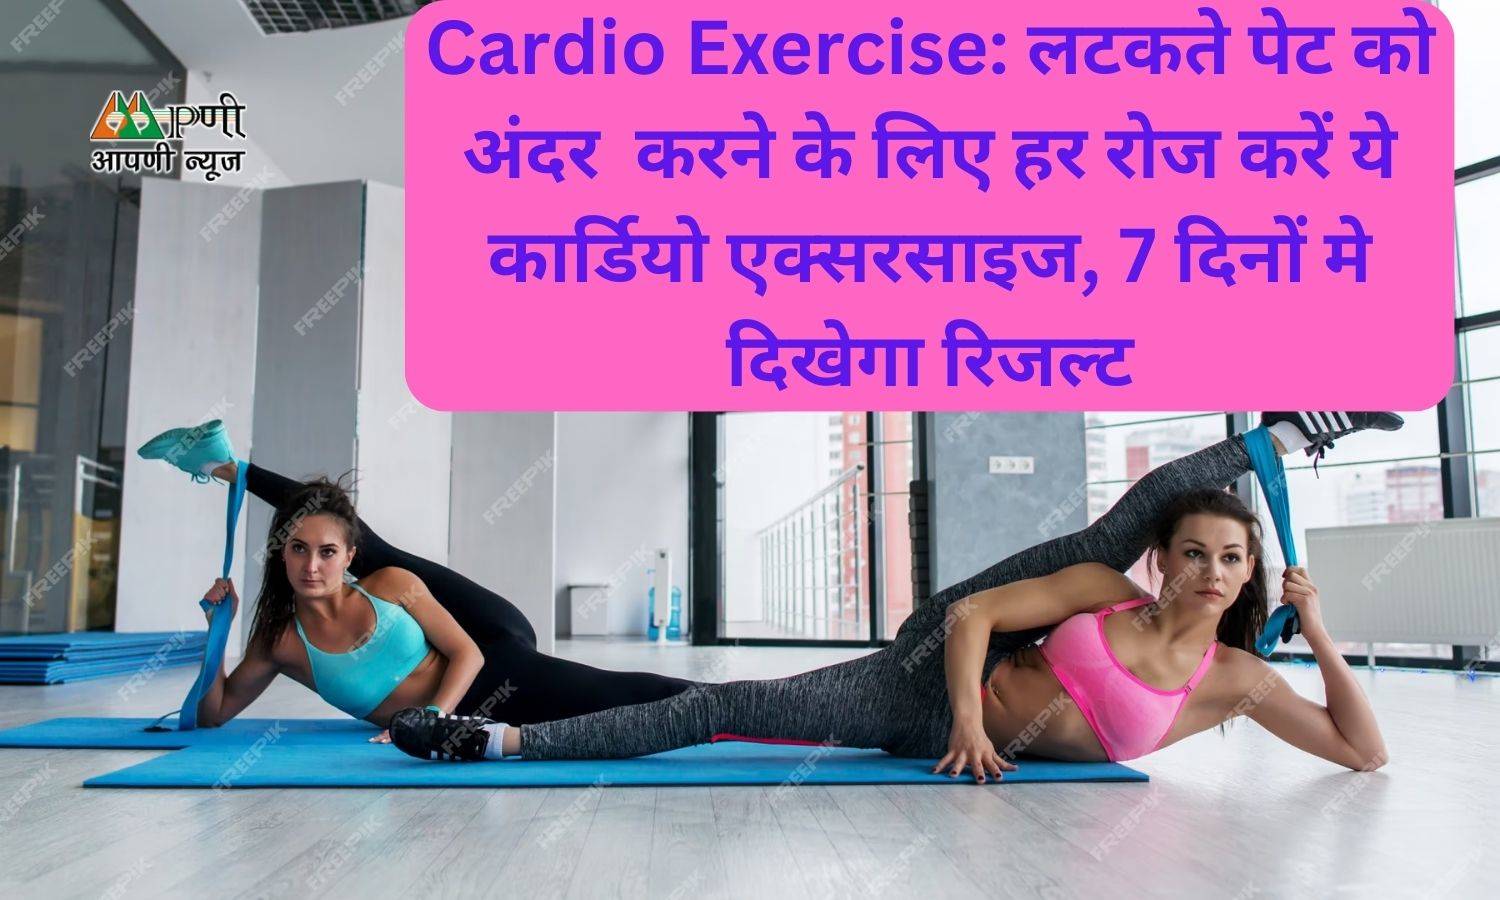 Cardio Exercise: लटकते पेट को अंदर करने के लिए हर रोज करें ये कार्डियो एक्सरसाइज, 7 दिनों मे दिखेगा रिजल्ट